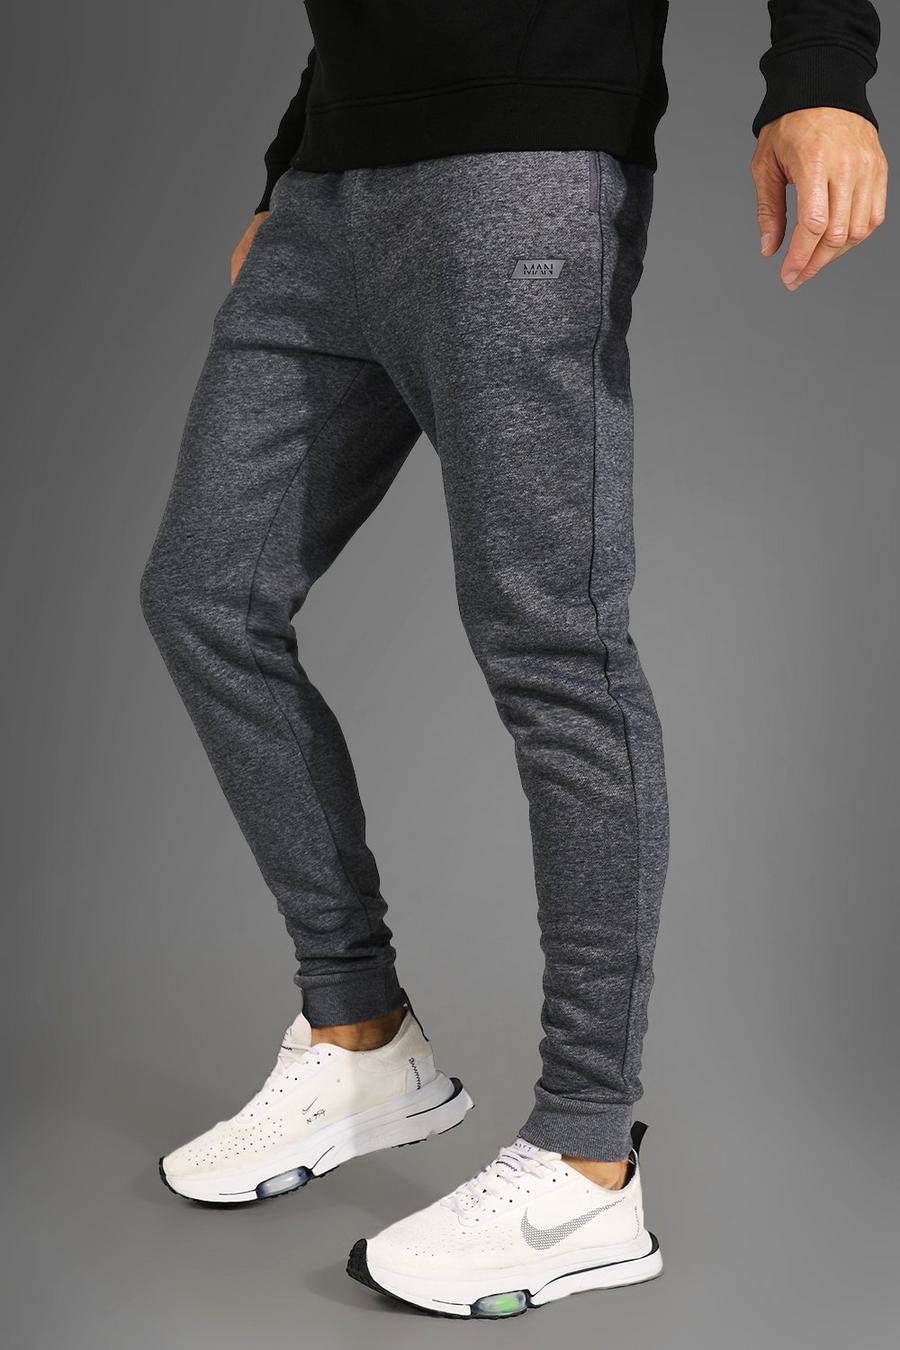 Pantalón deportivo Tall MAN Active deportivo, Charcoal gris image number 1